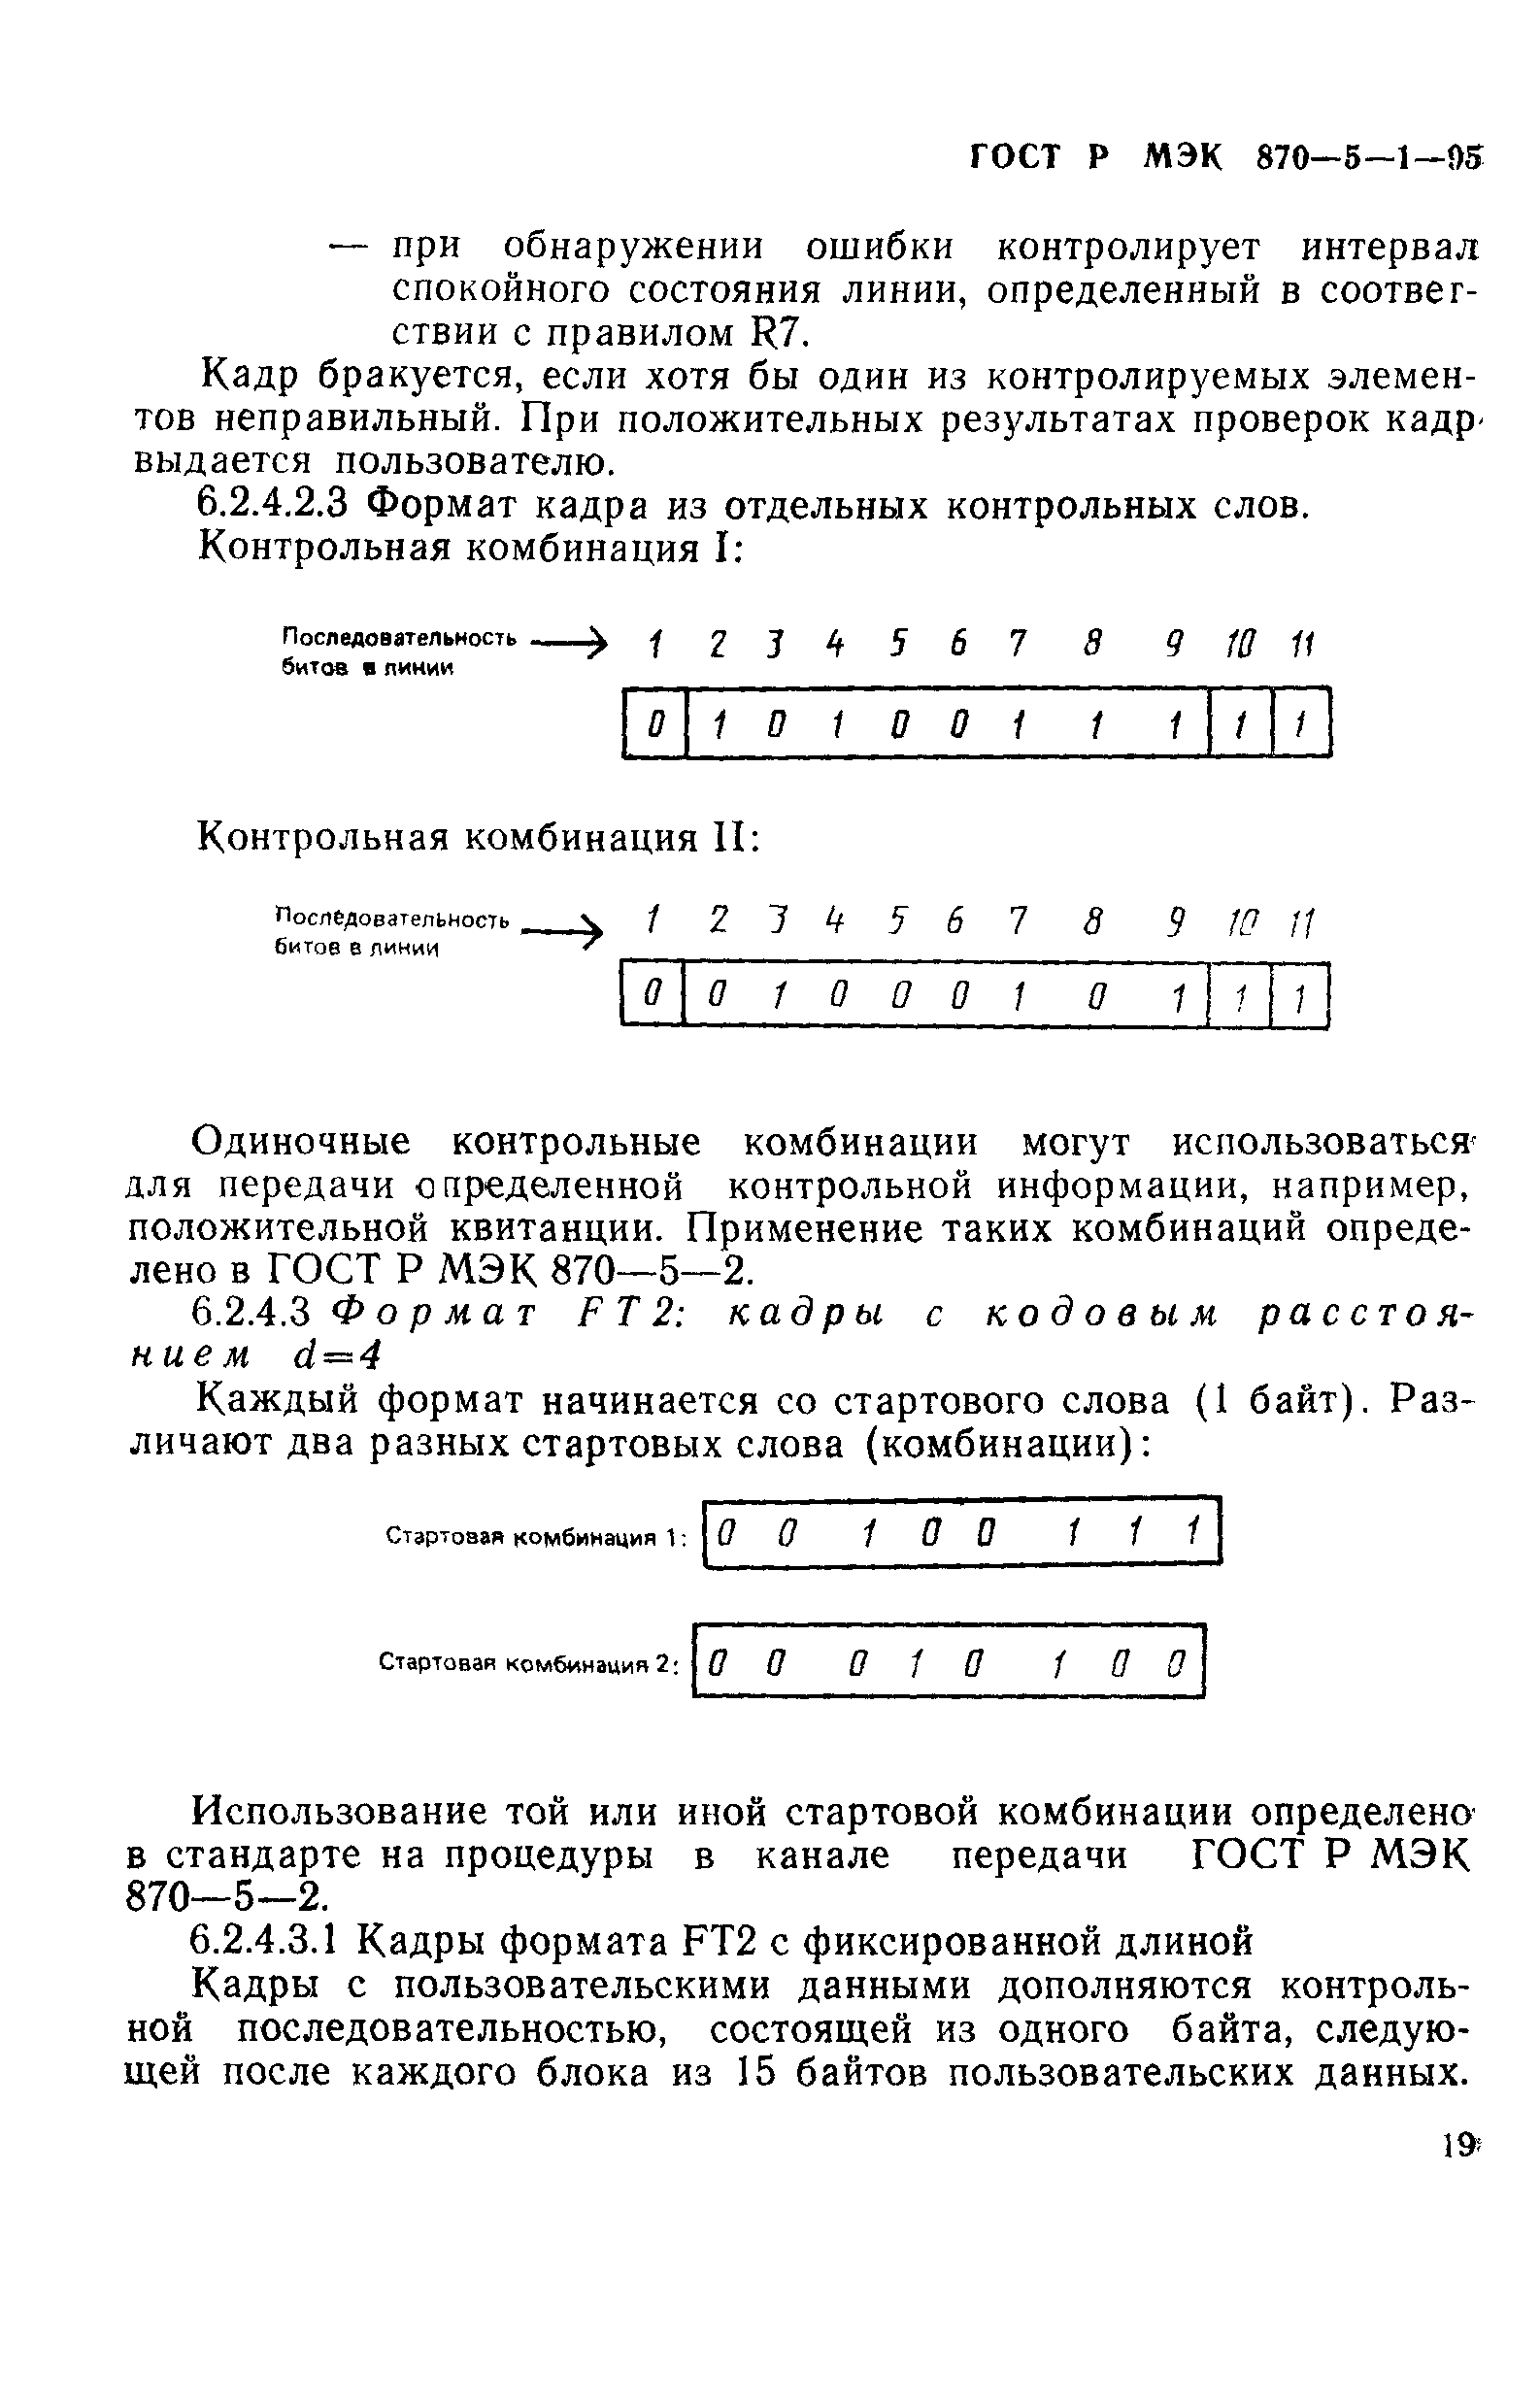 ГОСТ Р МЭК 870-5-1-95